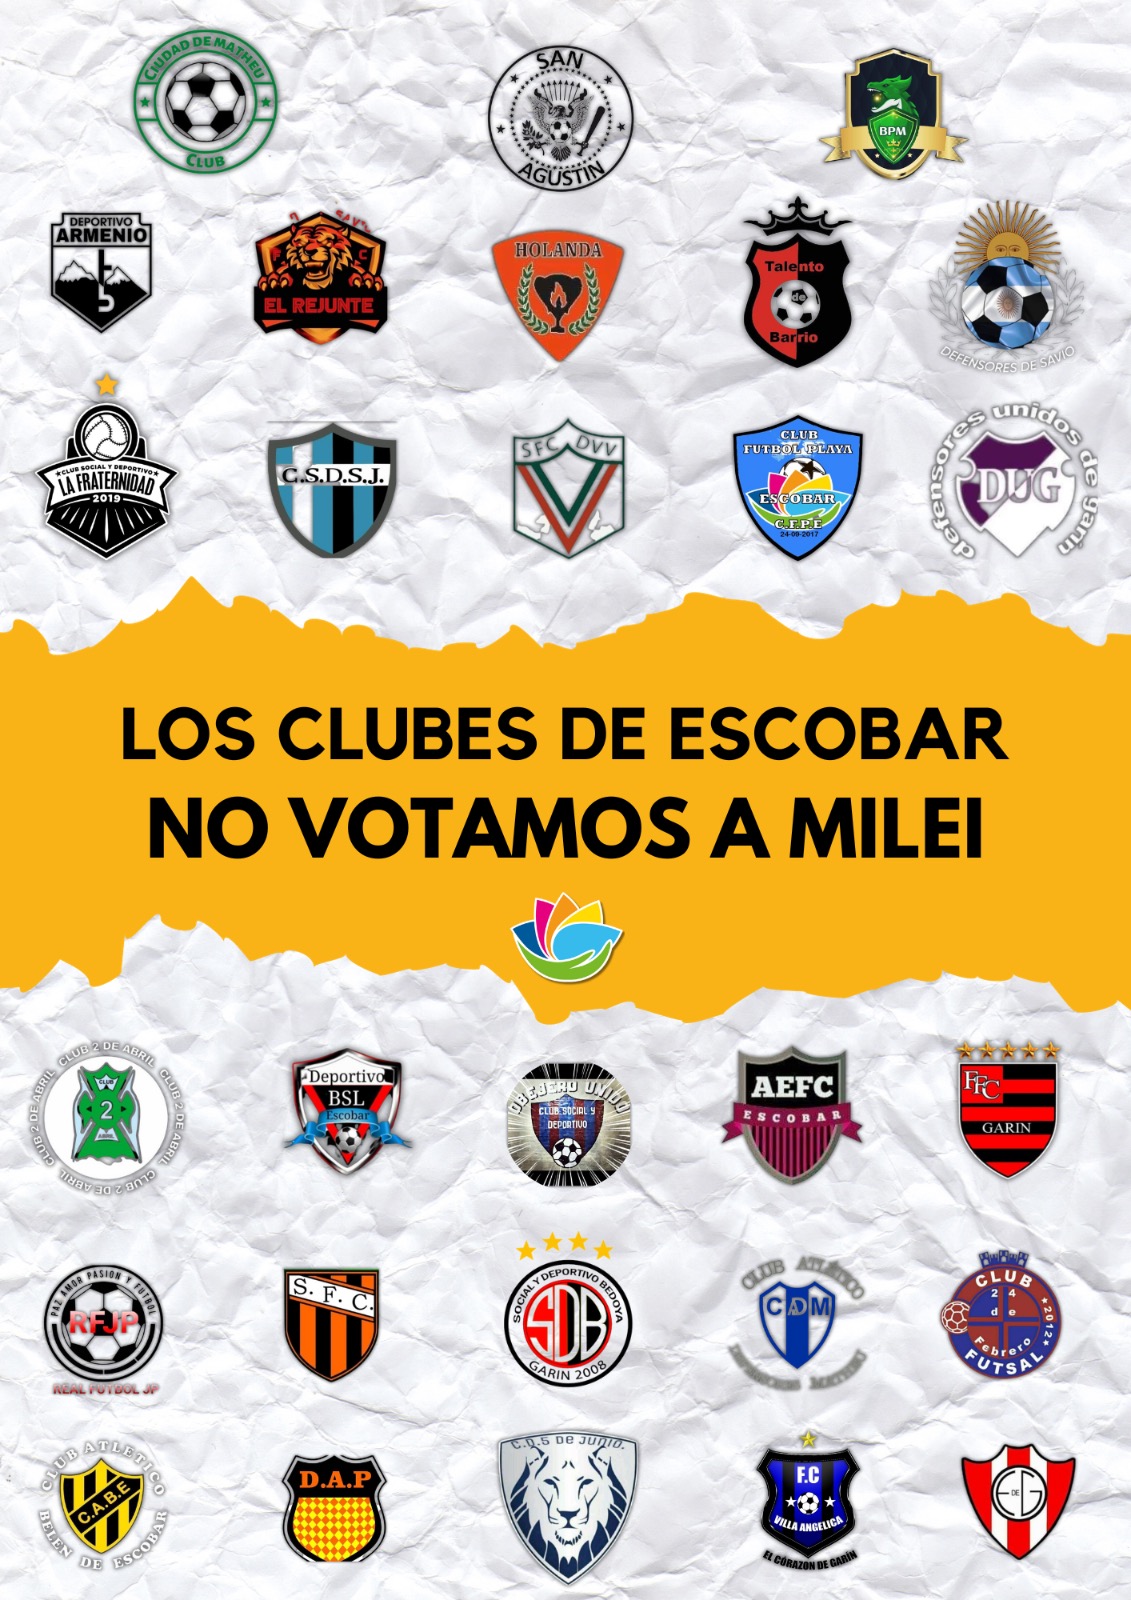 Los clubes del partido de Escobar se pronunciaron públicamente en contra de las Sociedades Anónimas Deportivas